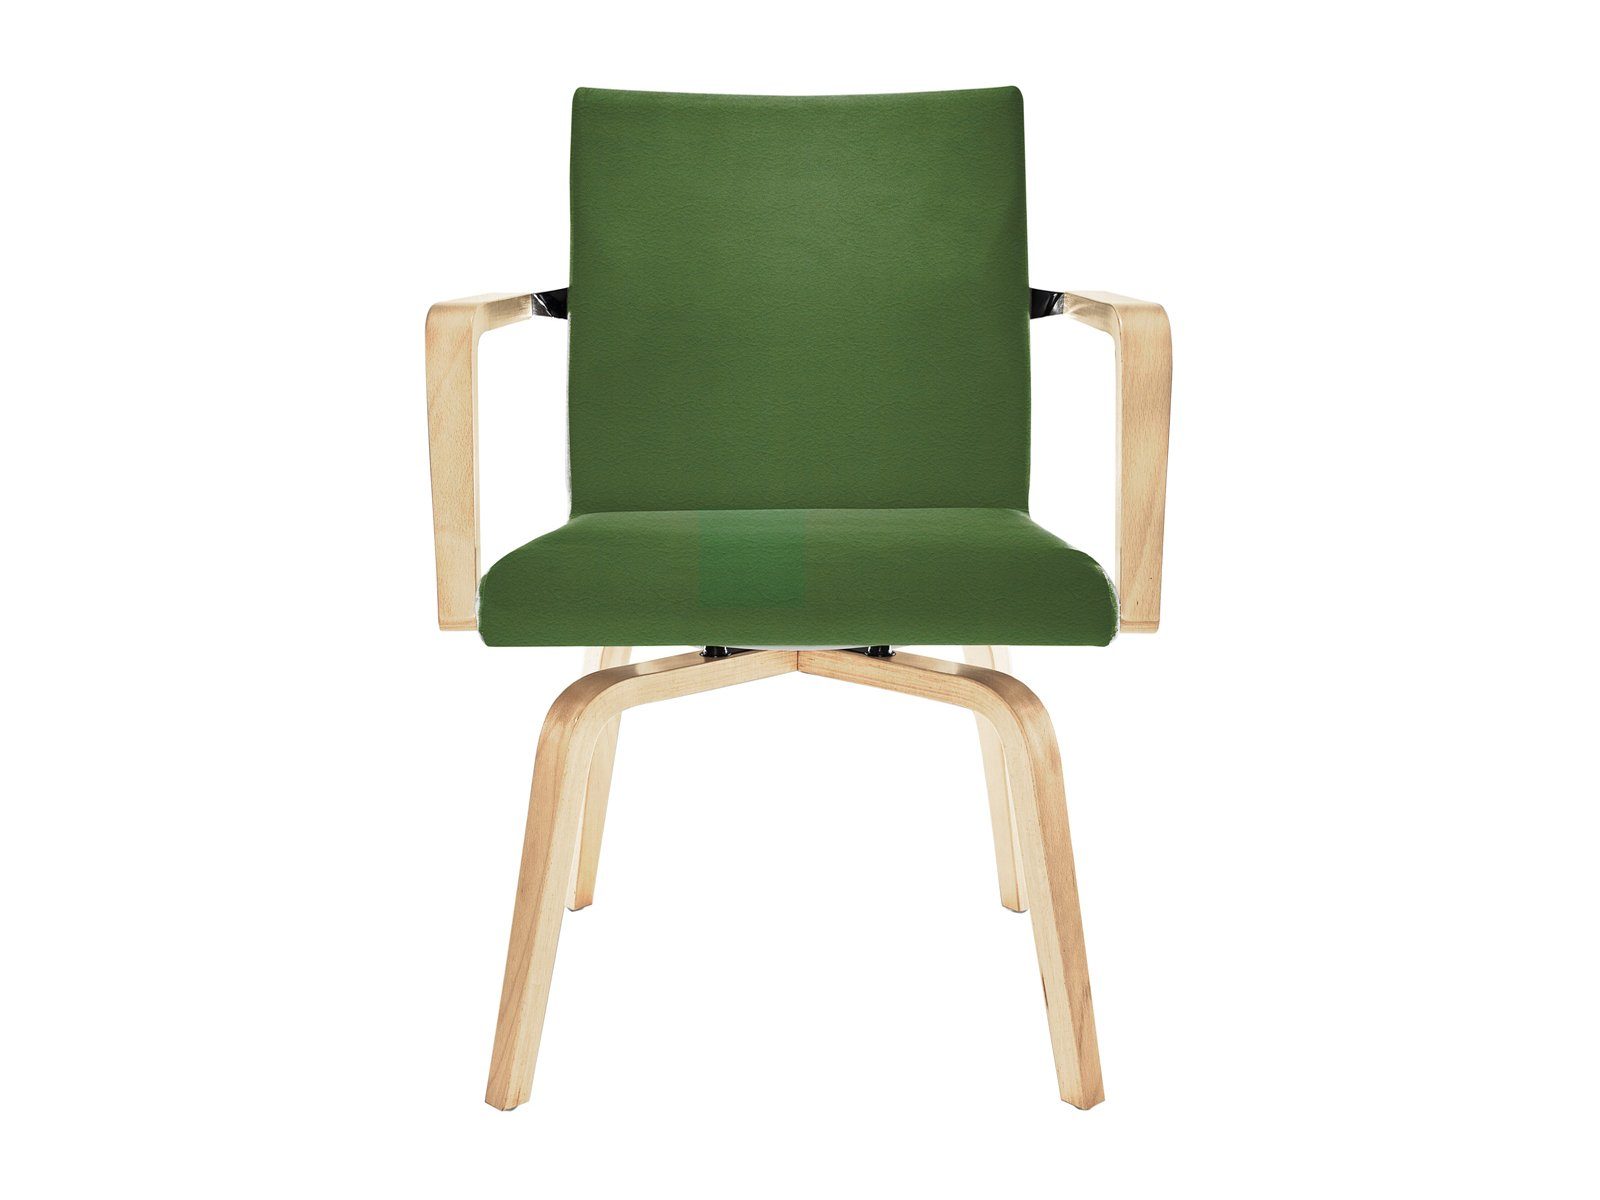 Mauser Sitzkultur Armlehnstuhl, ergonomischer Senioren-stuhl mit Armlehnen, Besucherstuhl Bezug Braun Grün